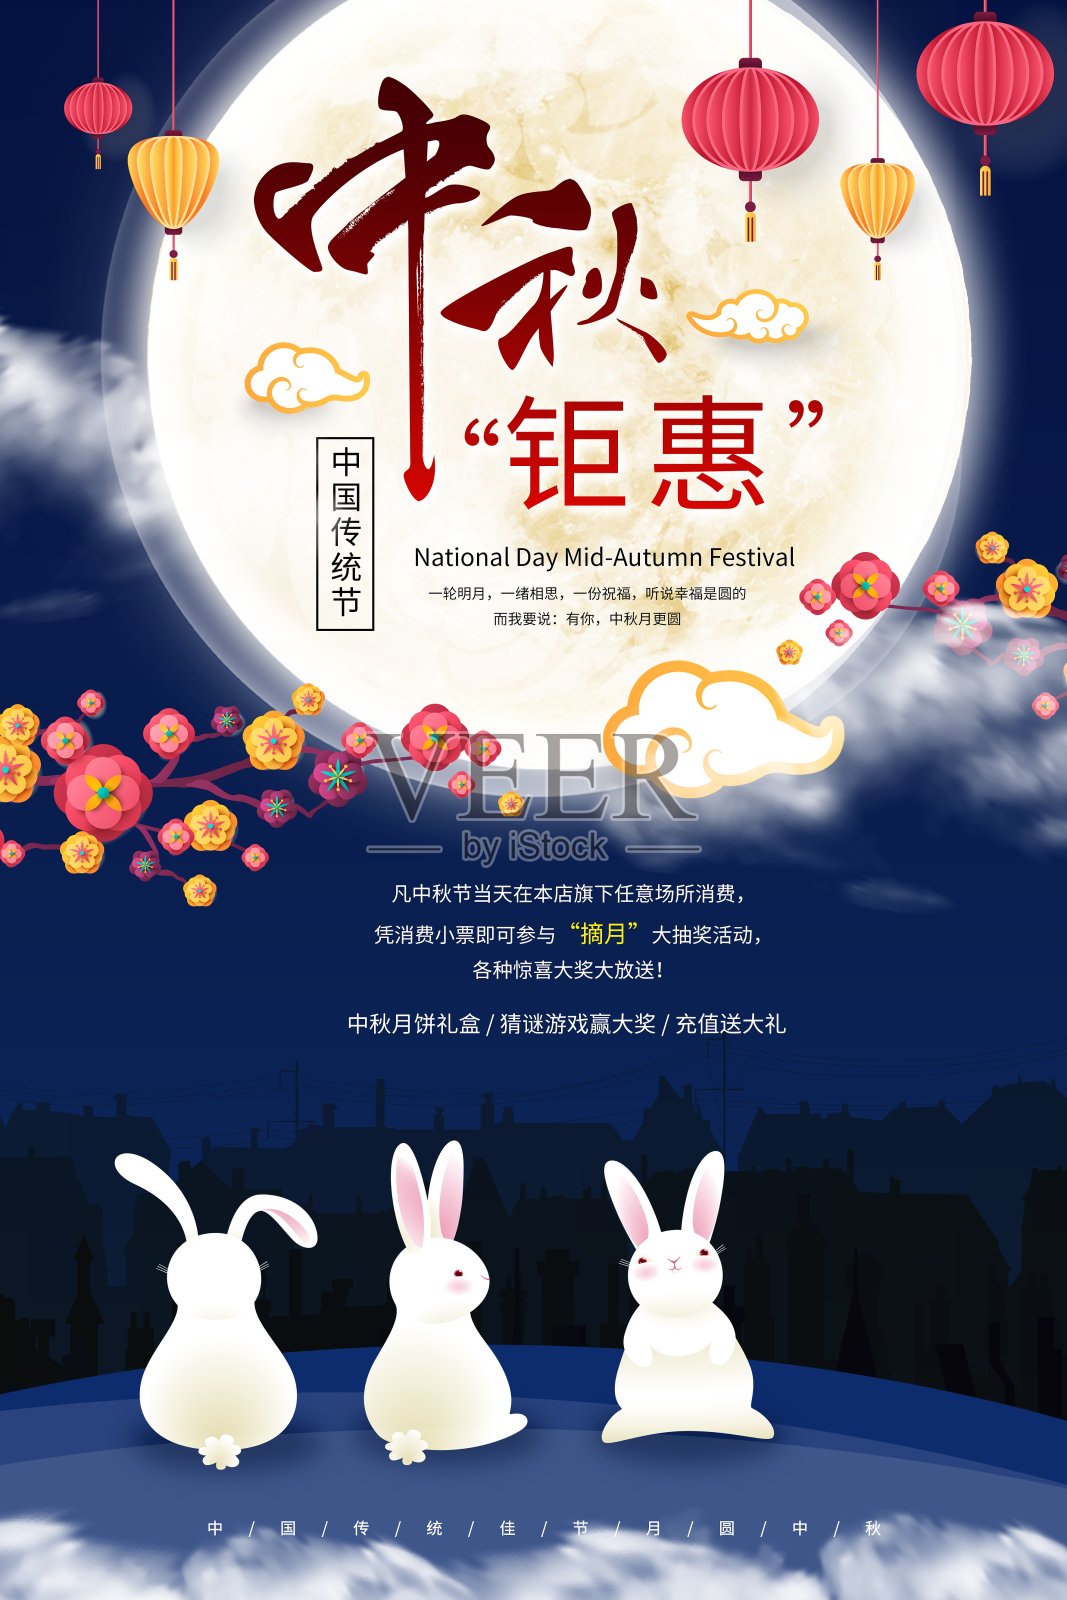 中国风中秋钜惠传统节日促销海报设计模板素材